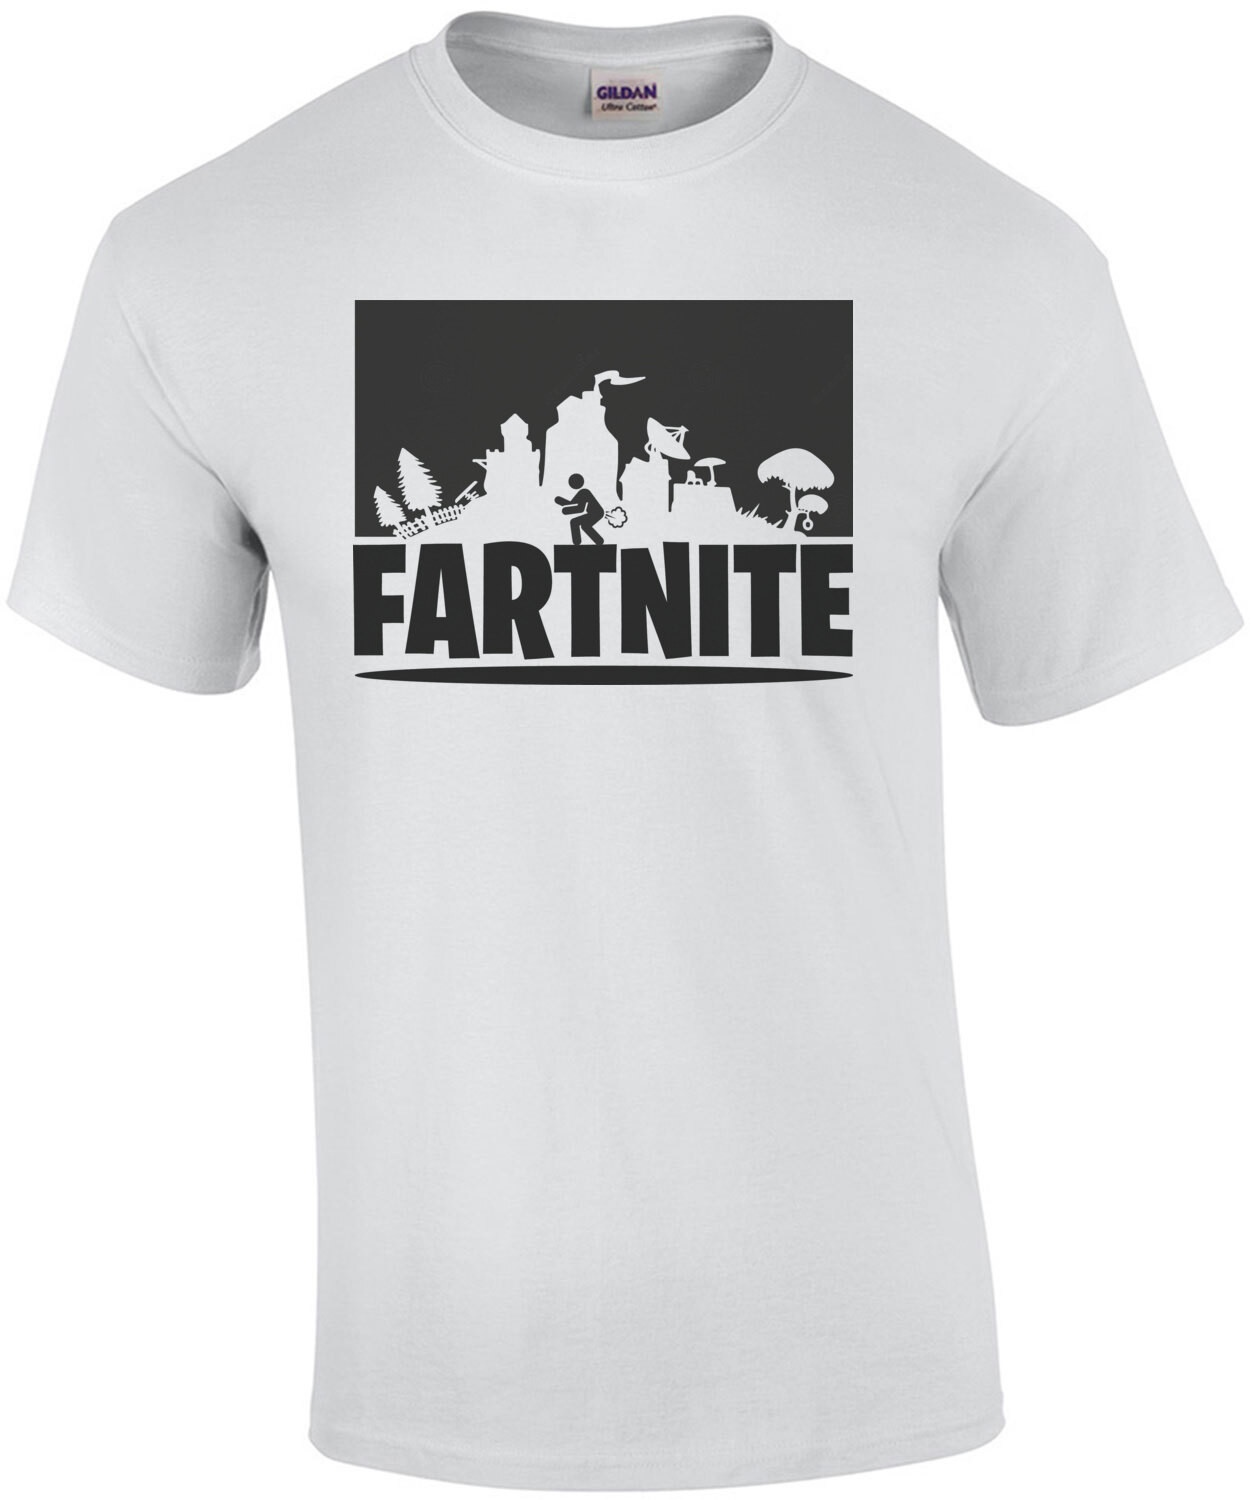 Fartnite - Fortnite Parody T-Shirt